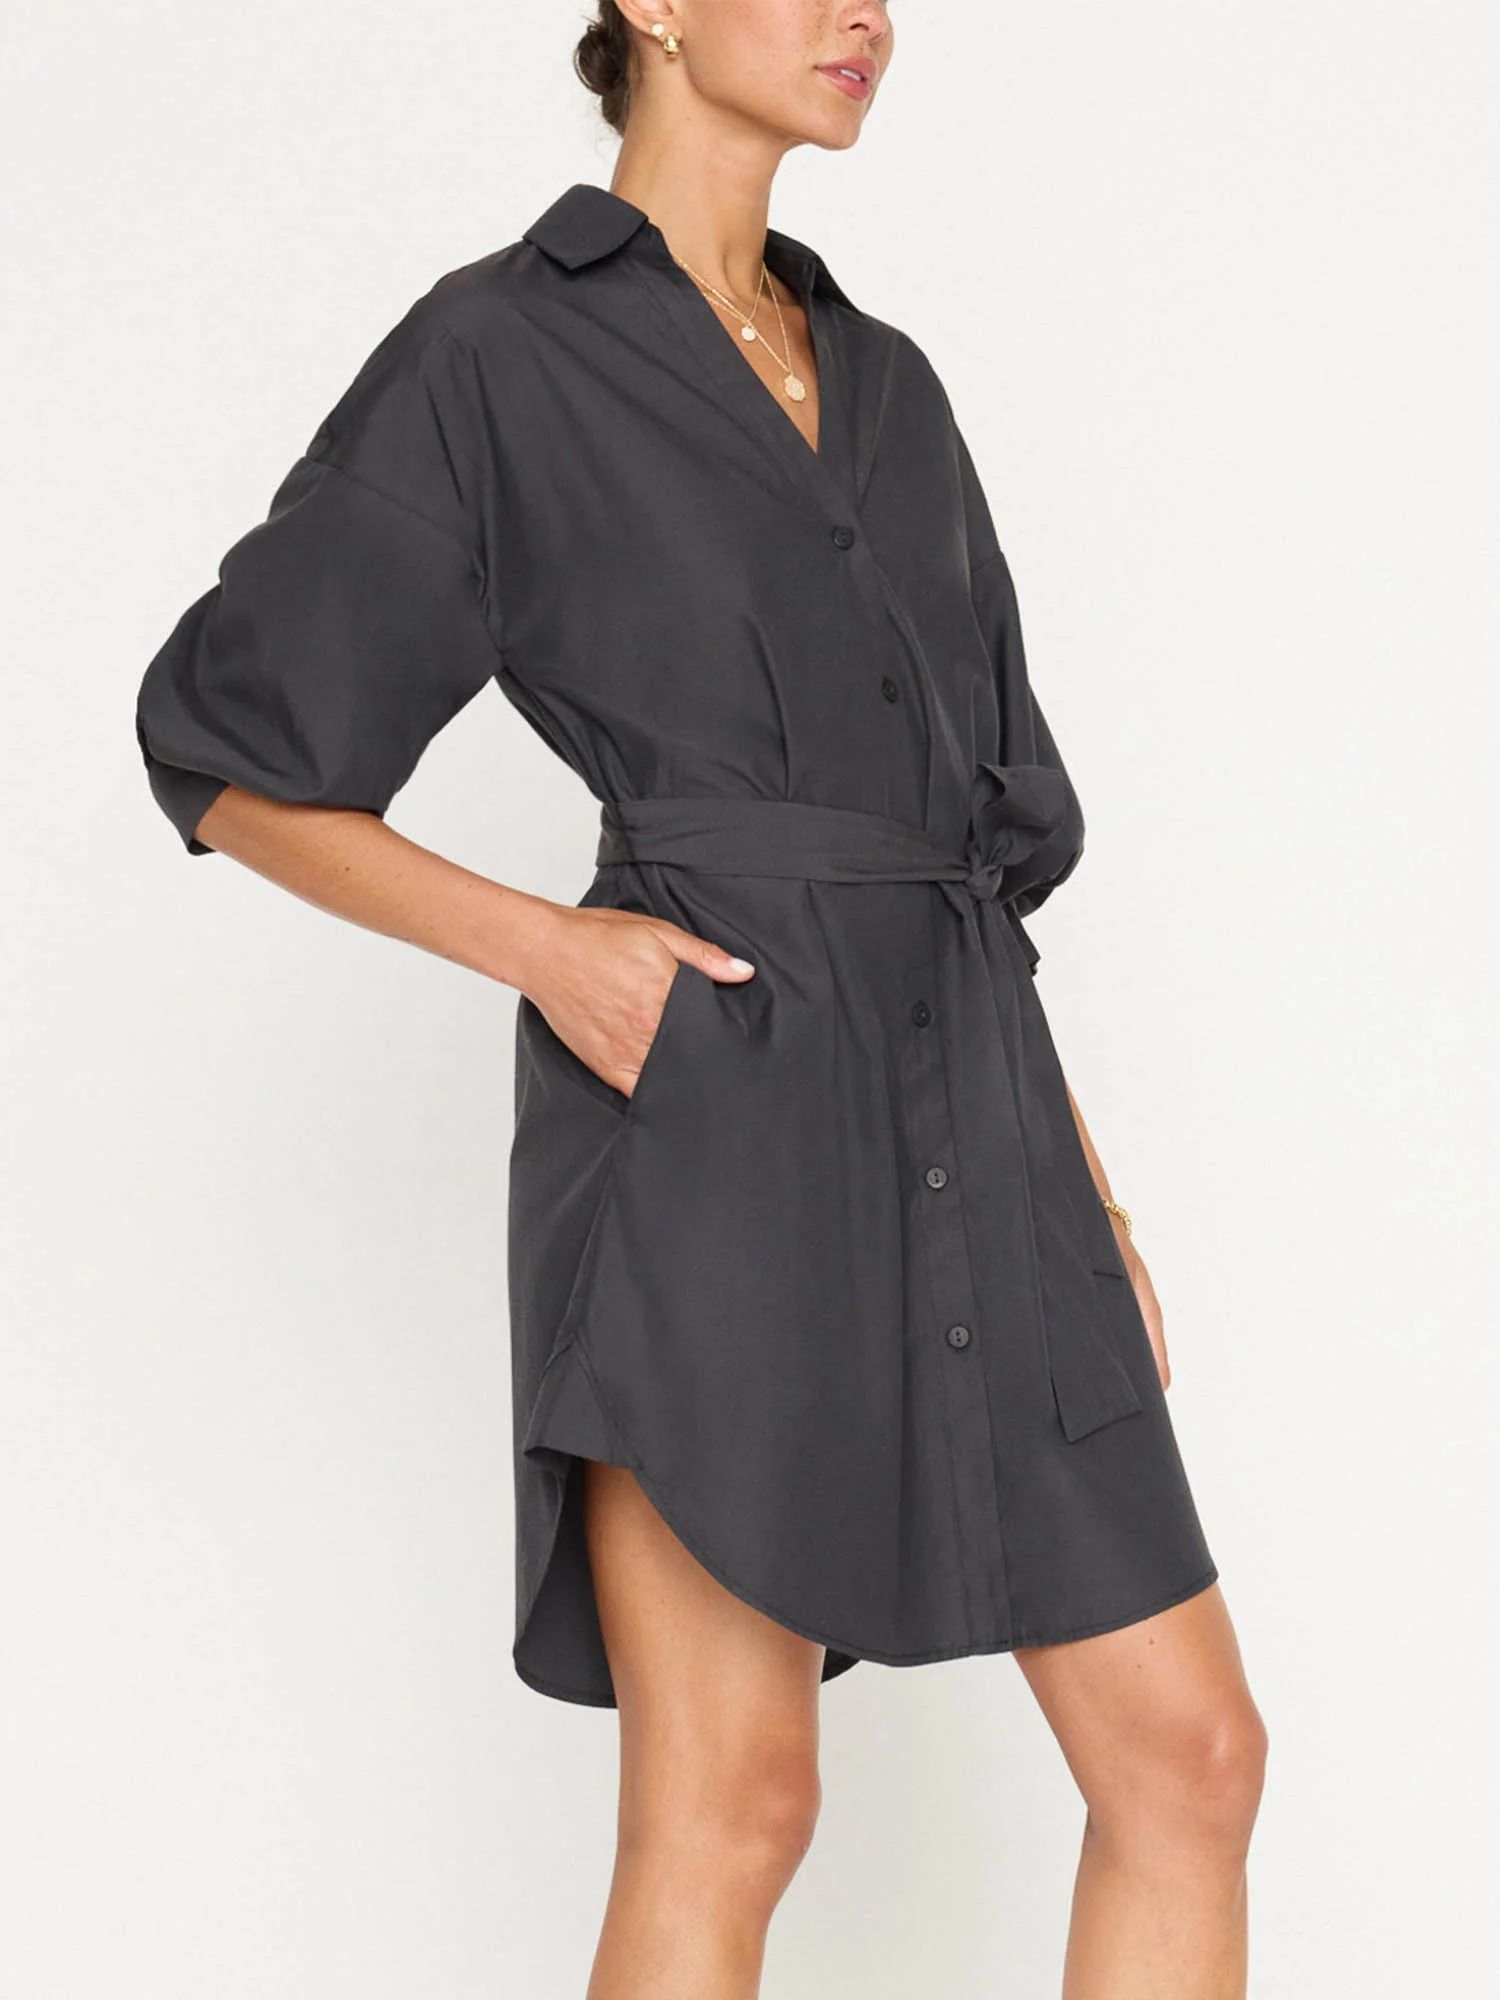 Brochu Walker | Women's Kate Belted Dress in Washed Black | Brochu Walker